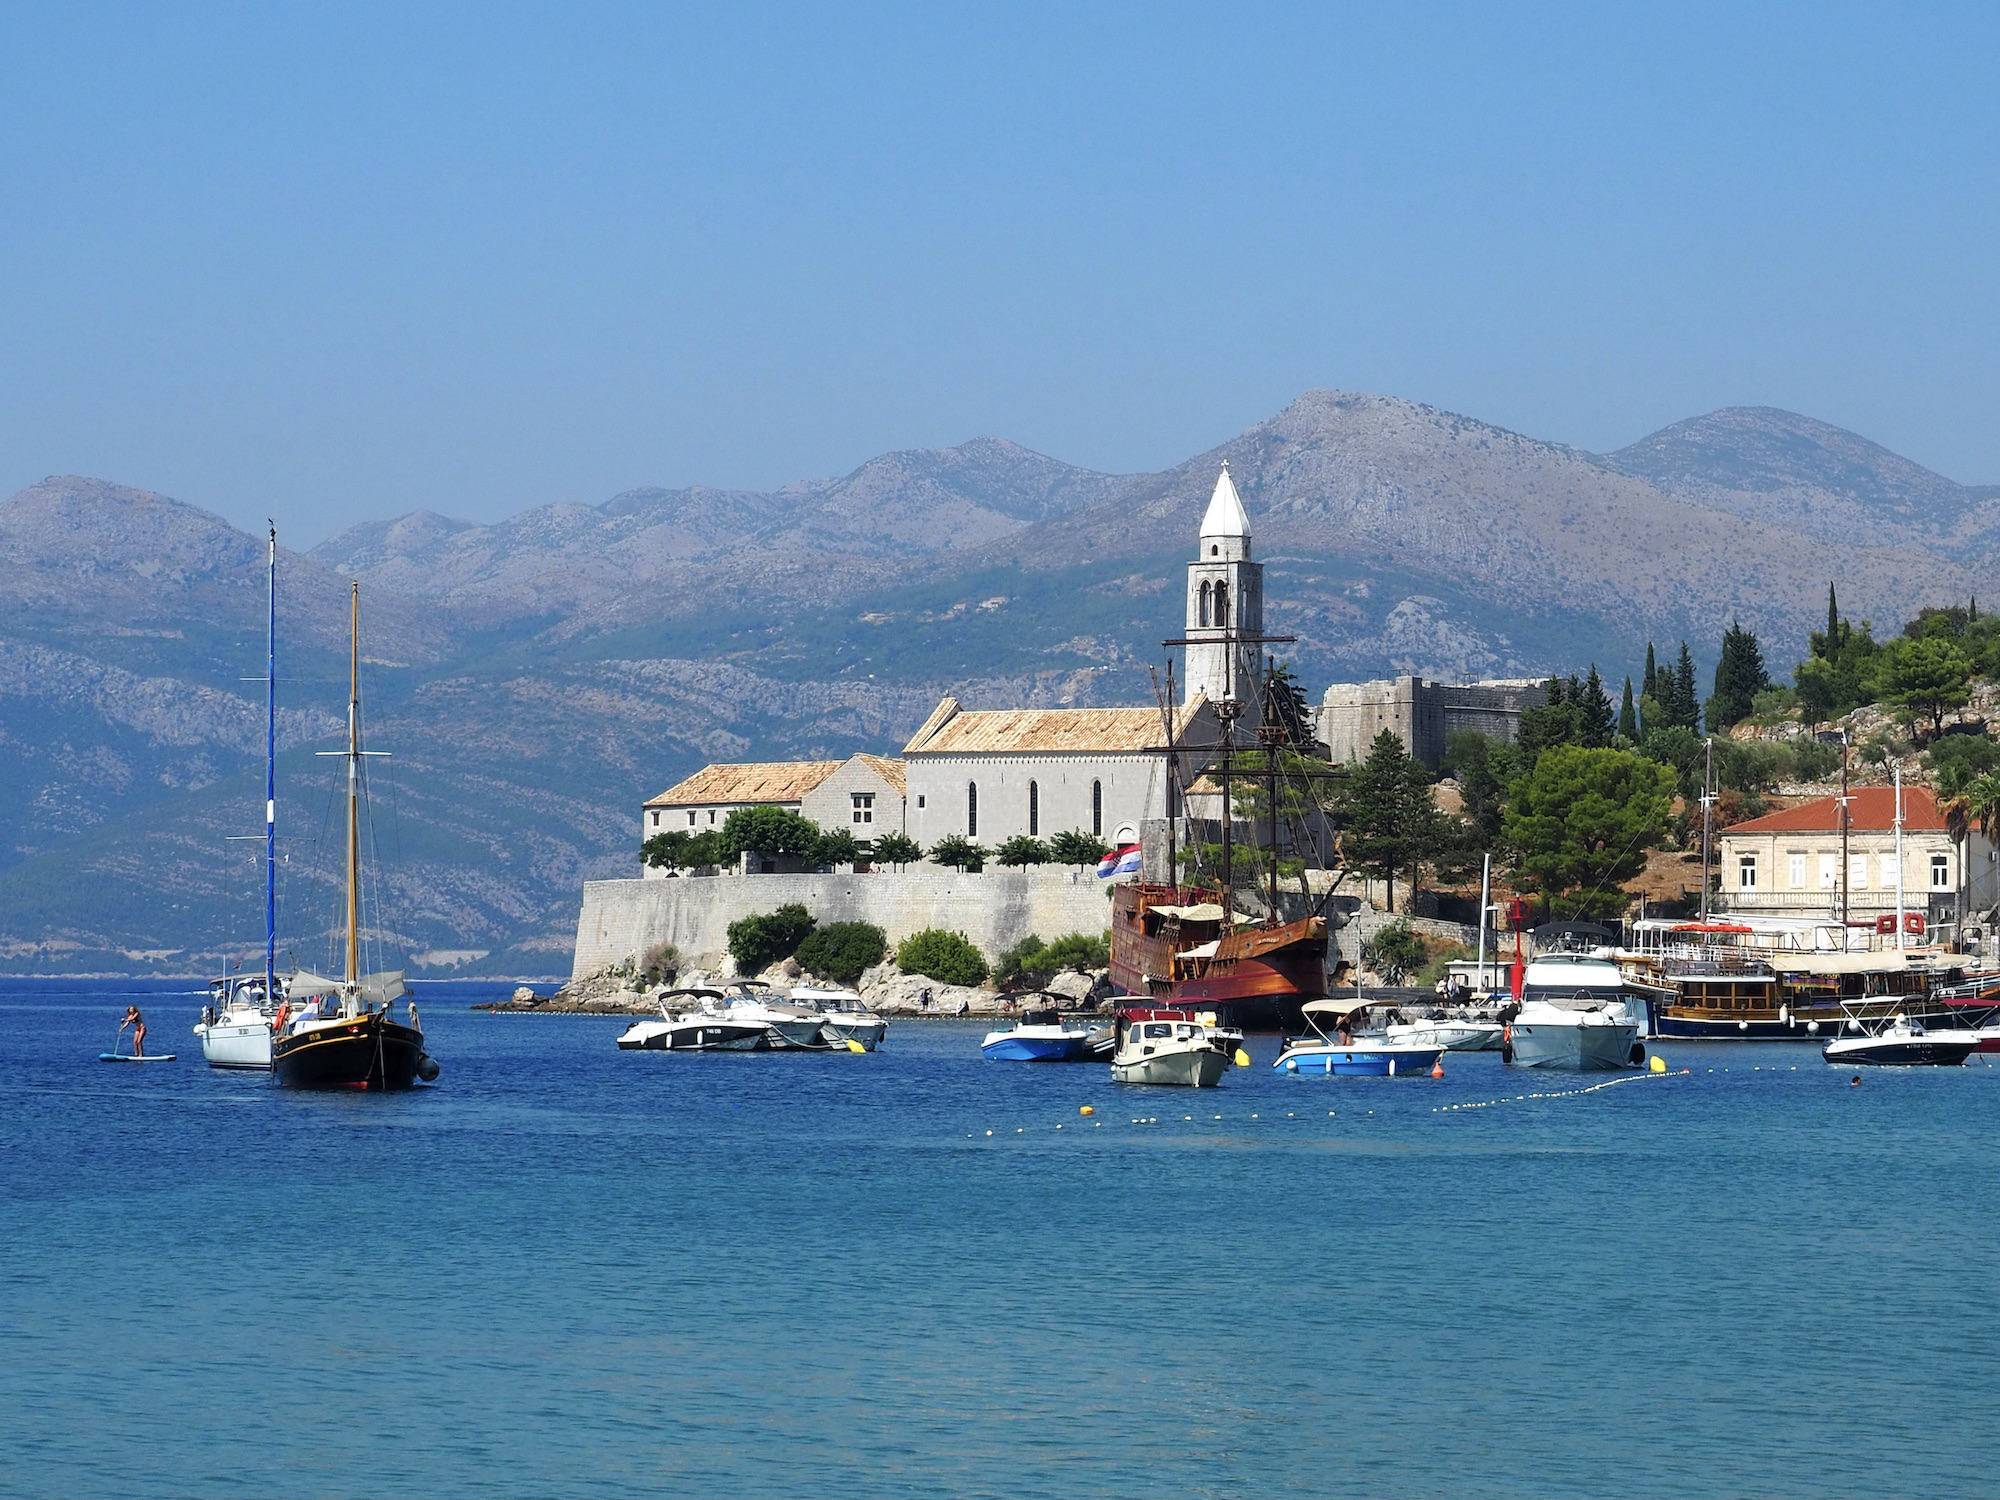 Croisière depuis Dubrovnik: visite des îles Elaphites en une journée